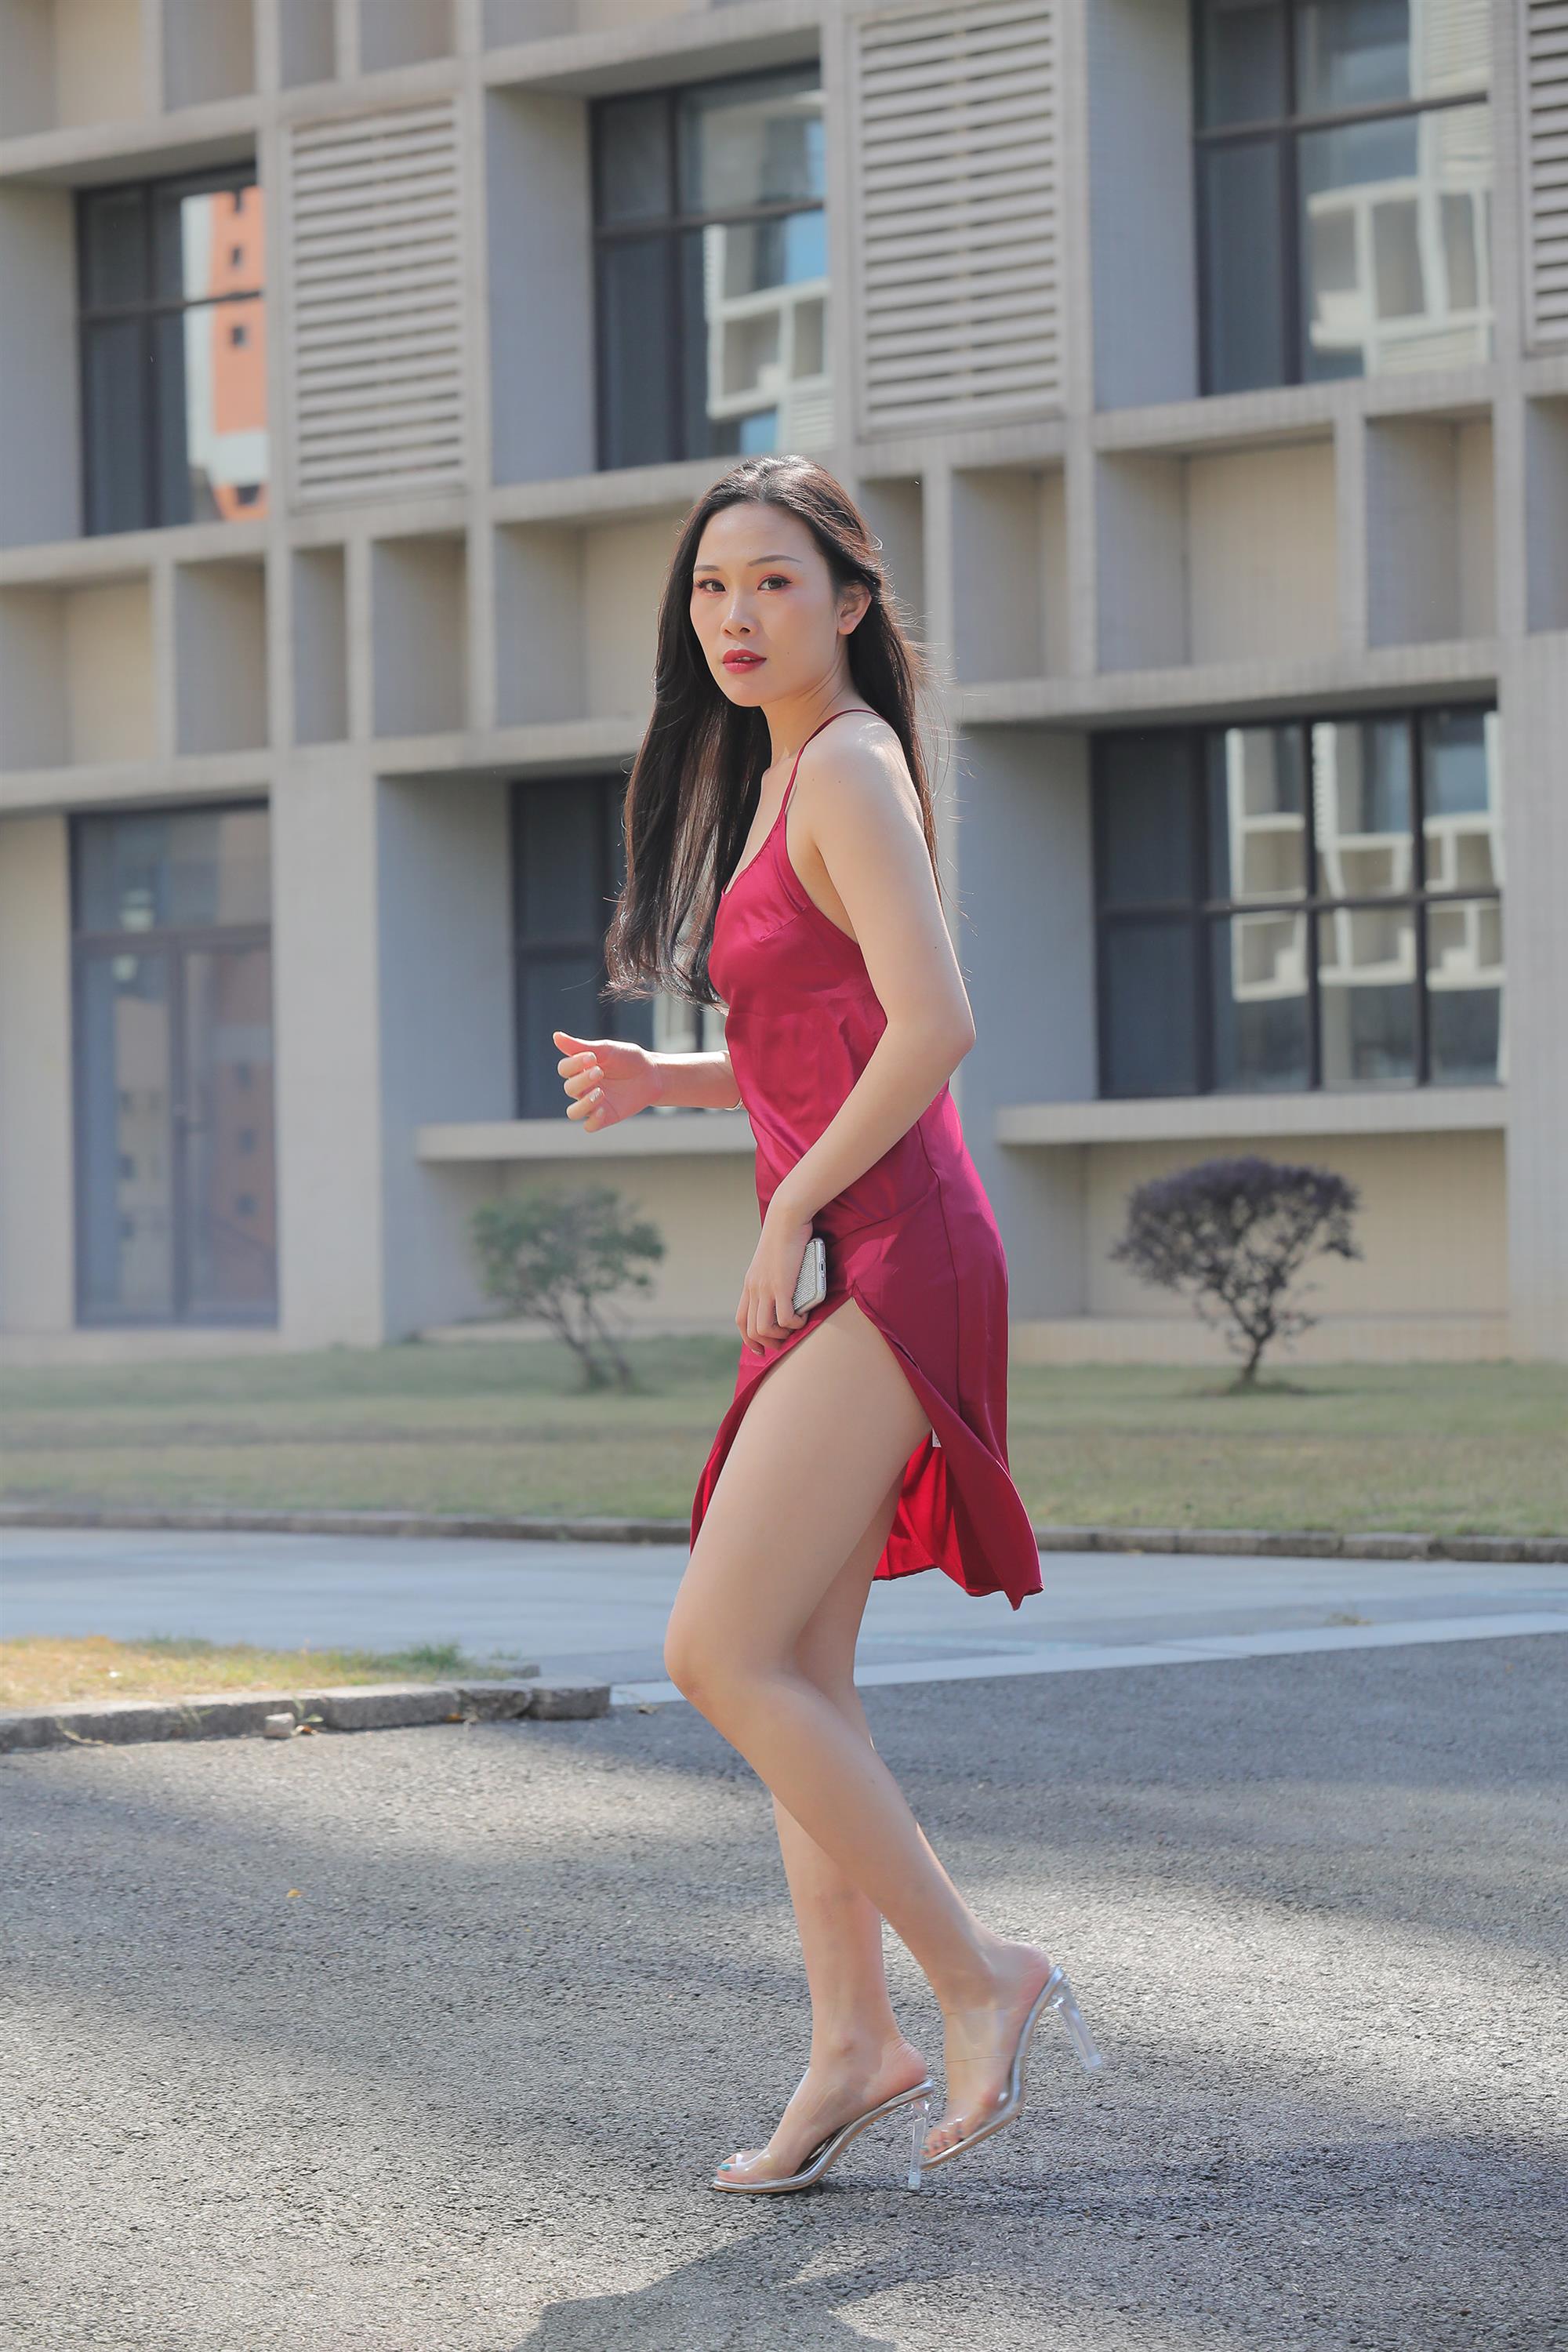 Street beauty in a red dress - 24.jpg